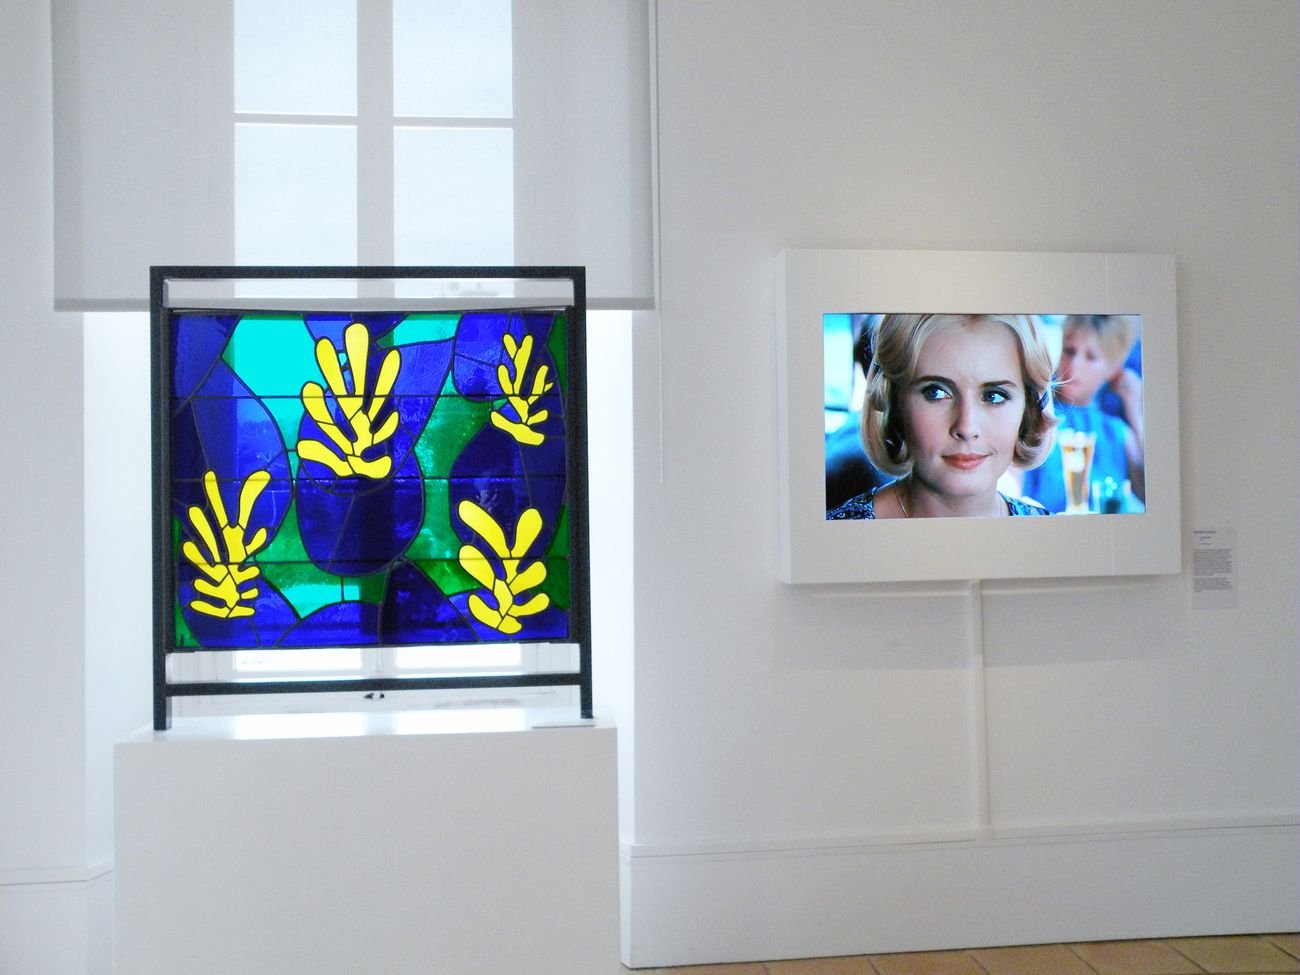 Cinématisse. Exhibition view at Musée Matisse, Nizza 2019 © Succession H. Matisse pour l’œuvre de l’artiste © Institut Lumière pour le film. Photo Ville de Nice – Musée Matisse